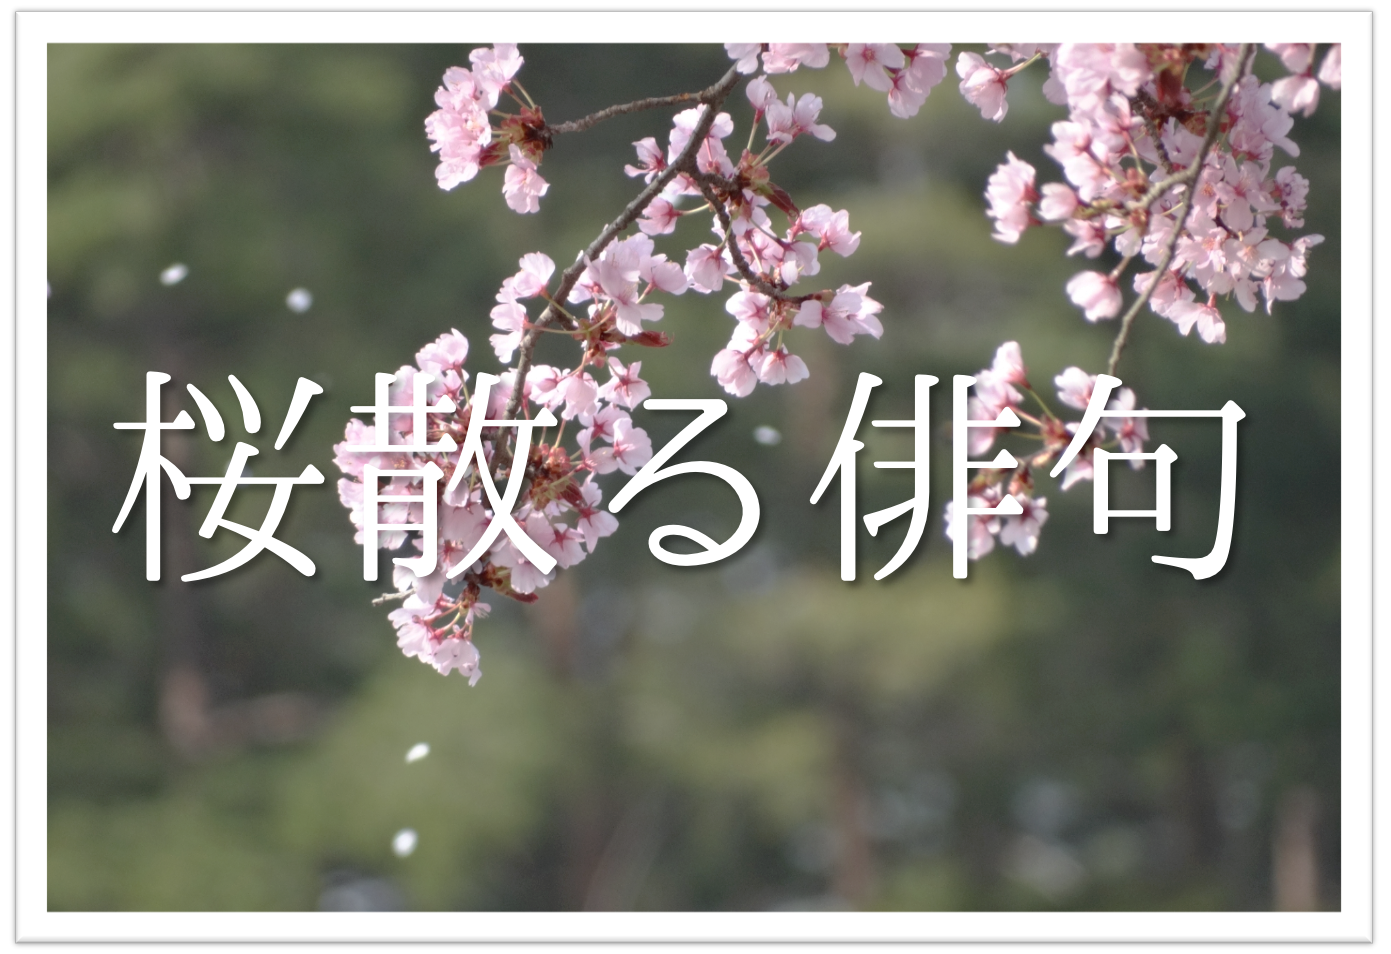 桜散るをテーマにした俳句ネタ 選 春の終わりを告げる季語を使った俳句 俳句の教科書 俳句の作り方 有名俳句の解説サイト